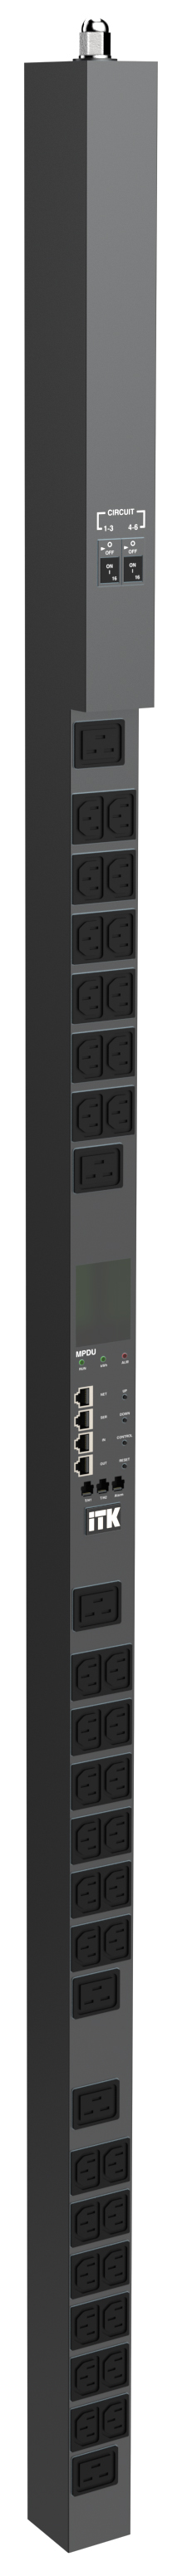 ITK CONTROL PDU с общим мониторингом и управлением PV1512 1Ф 32А 36С13 6С19 кабель 3м IEC60309